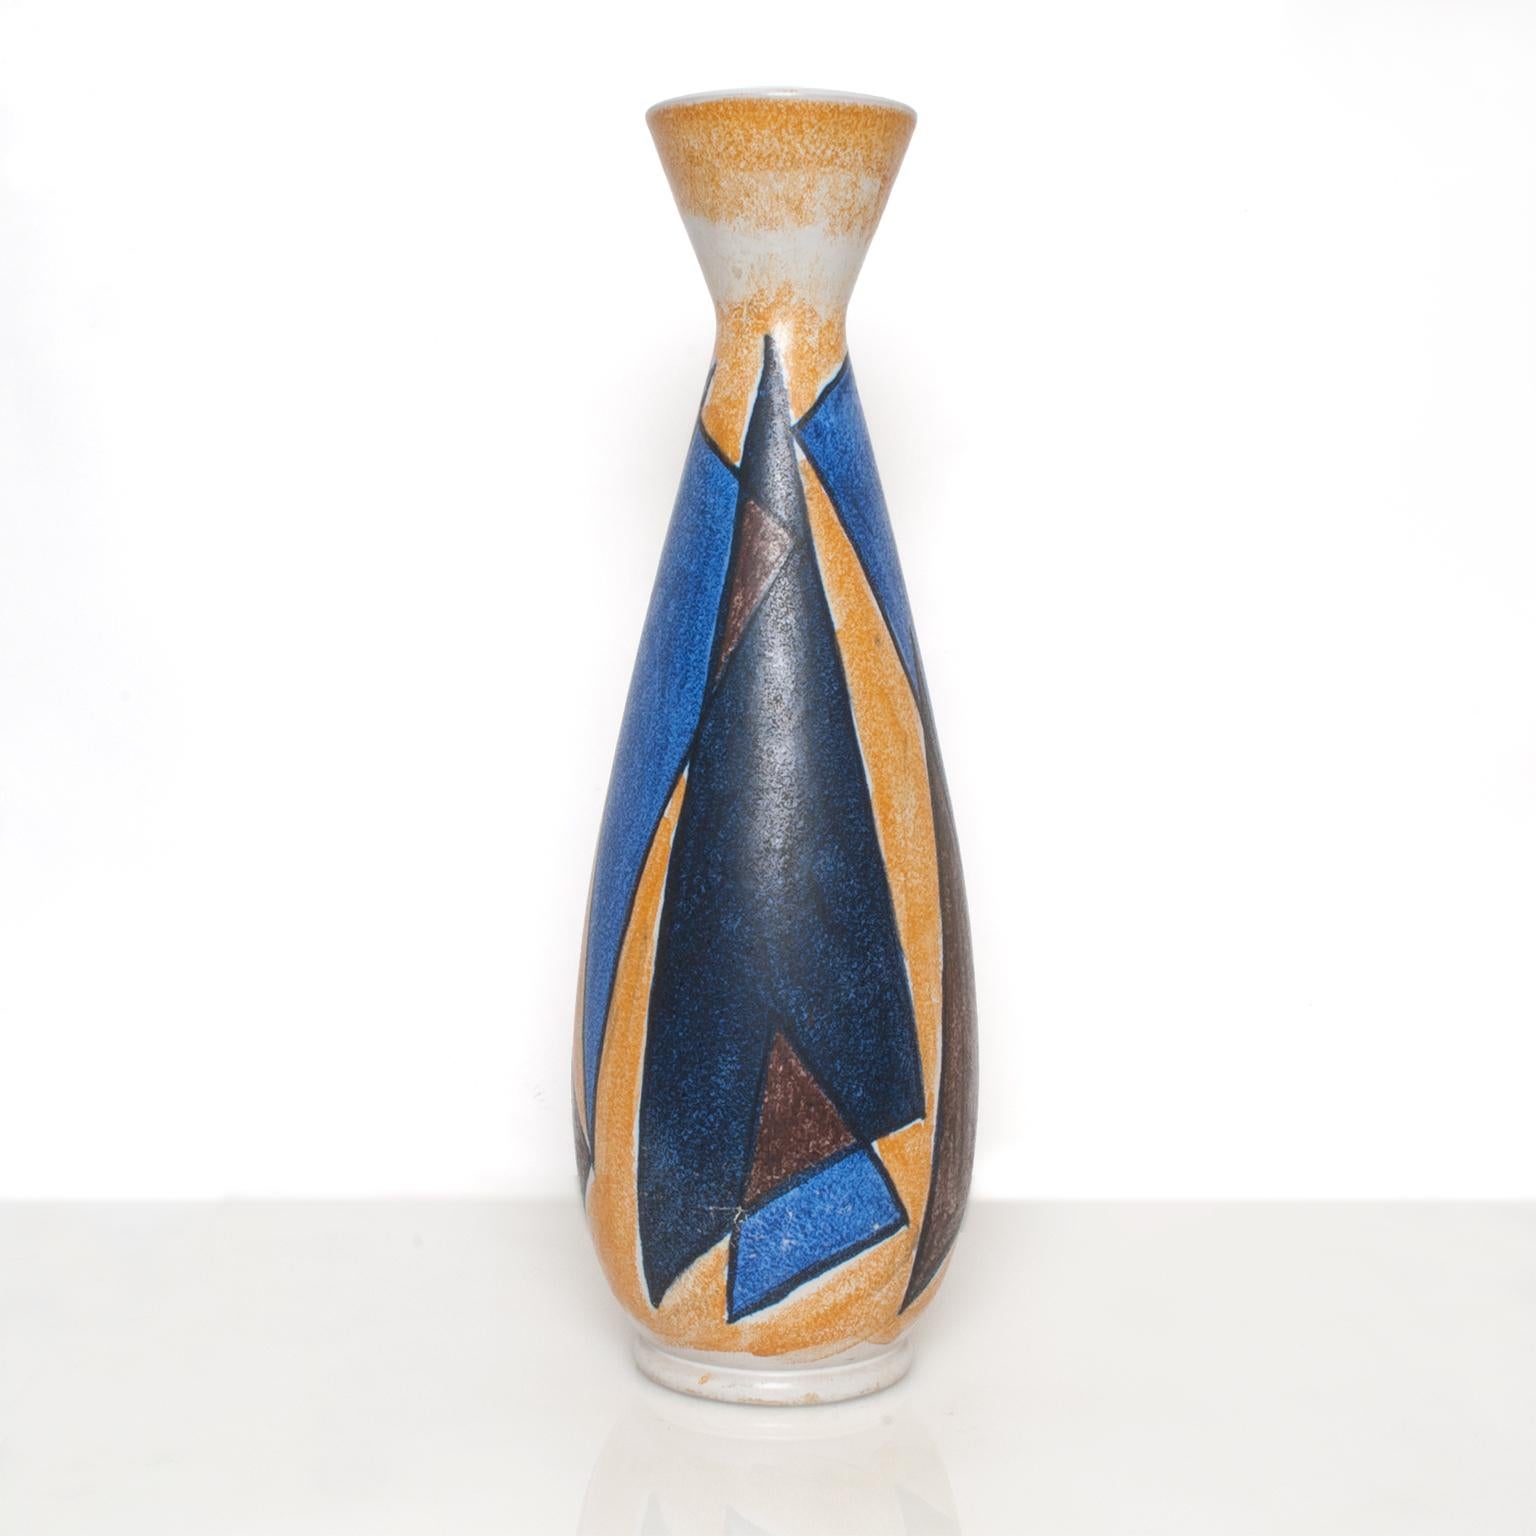 Grand vase en céramique moderne scandinave avec un design abstrait de Mette Doller et une forme conçue par Ivar Ericsson pour Hoganas, Suède. Mesures : Hauteur 20,5